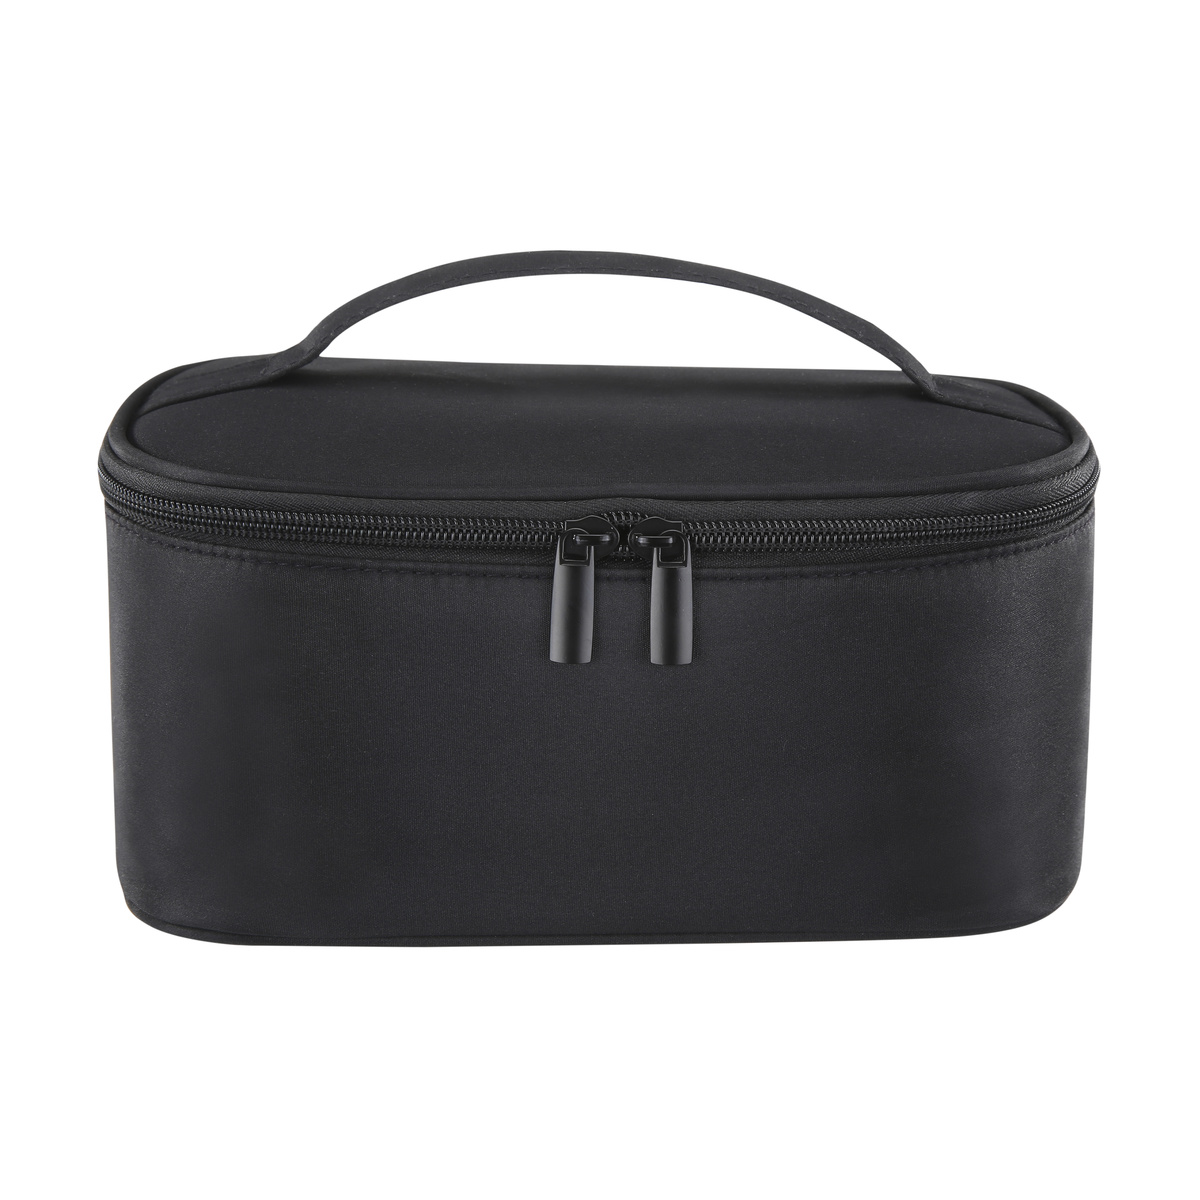 Basic Travel Bag - Black, Medium | Kmart